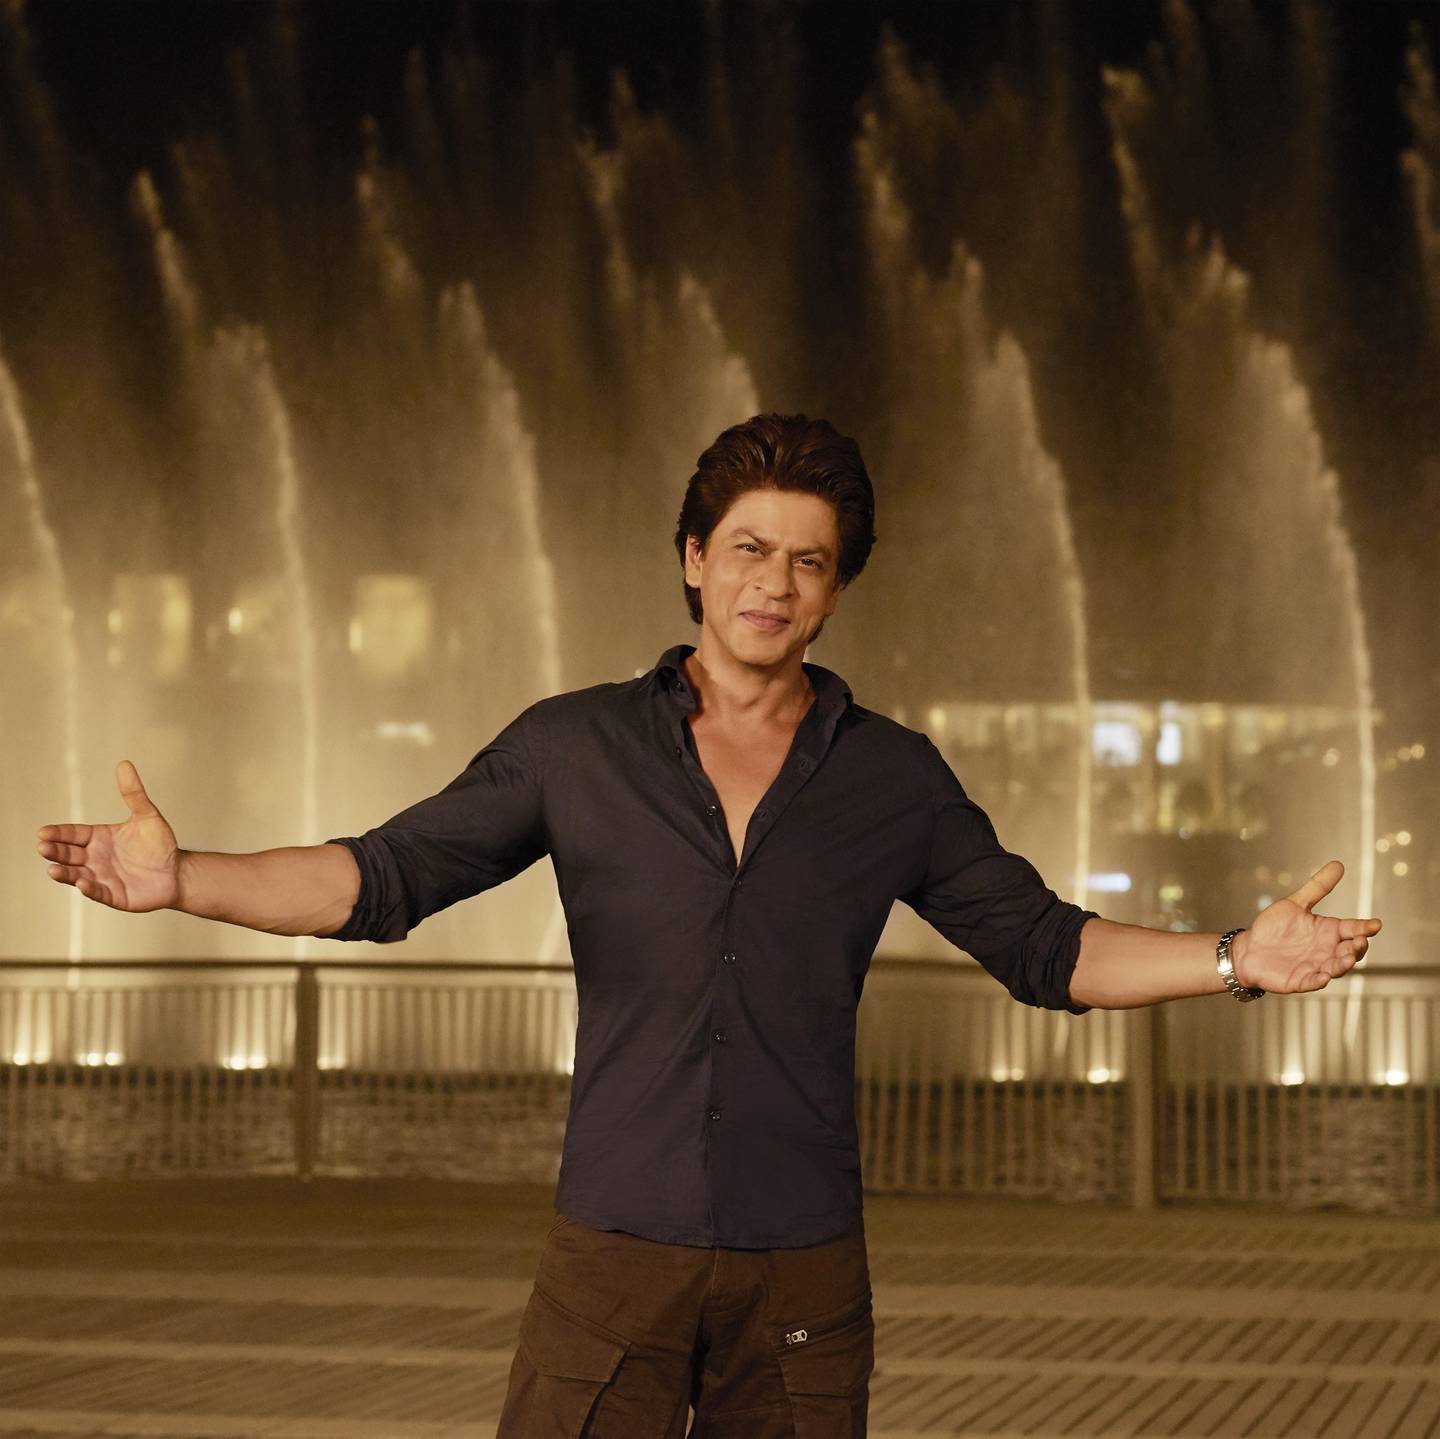 Shah Rukh Khan is see enjoying the Dubai Fountain as part of his #BeMyGuest video. Photo: Dubai Tourism